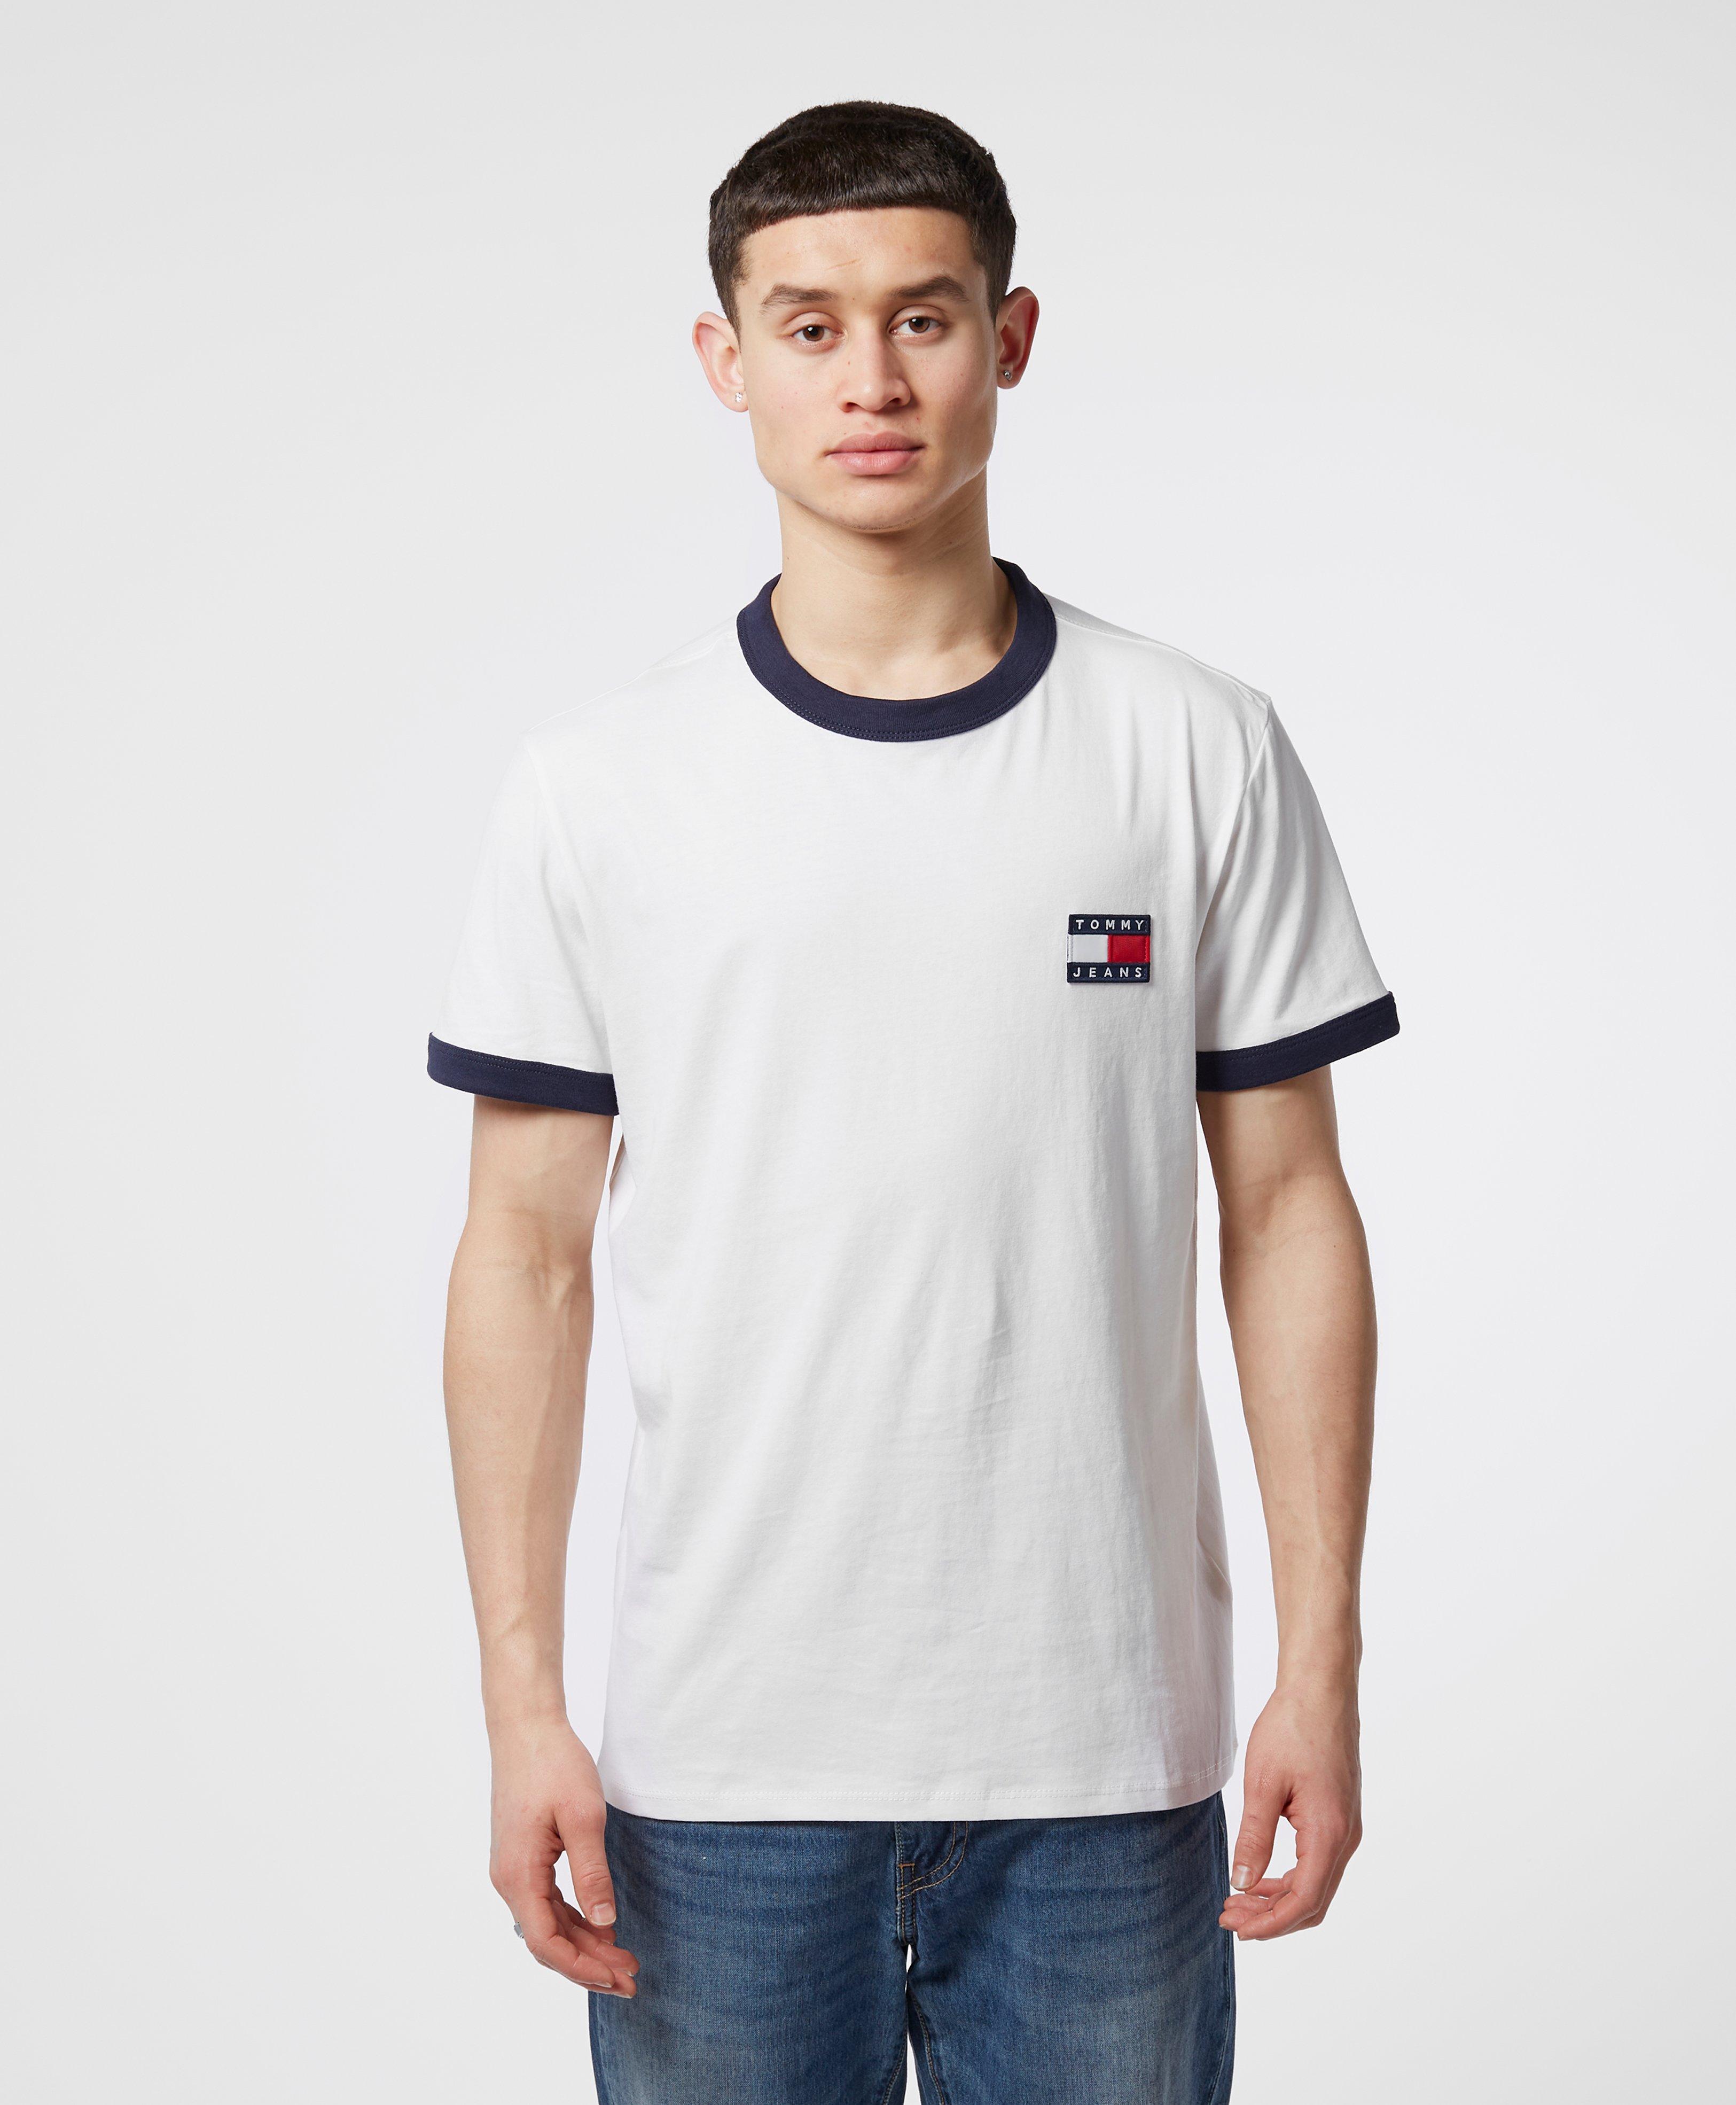 Tommy Hilfiger Denim Ringer Short Sleeve T-shirt in White for Men - Lyst